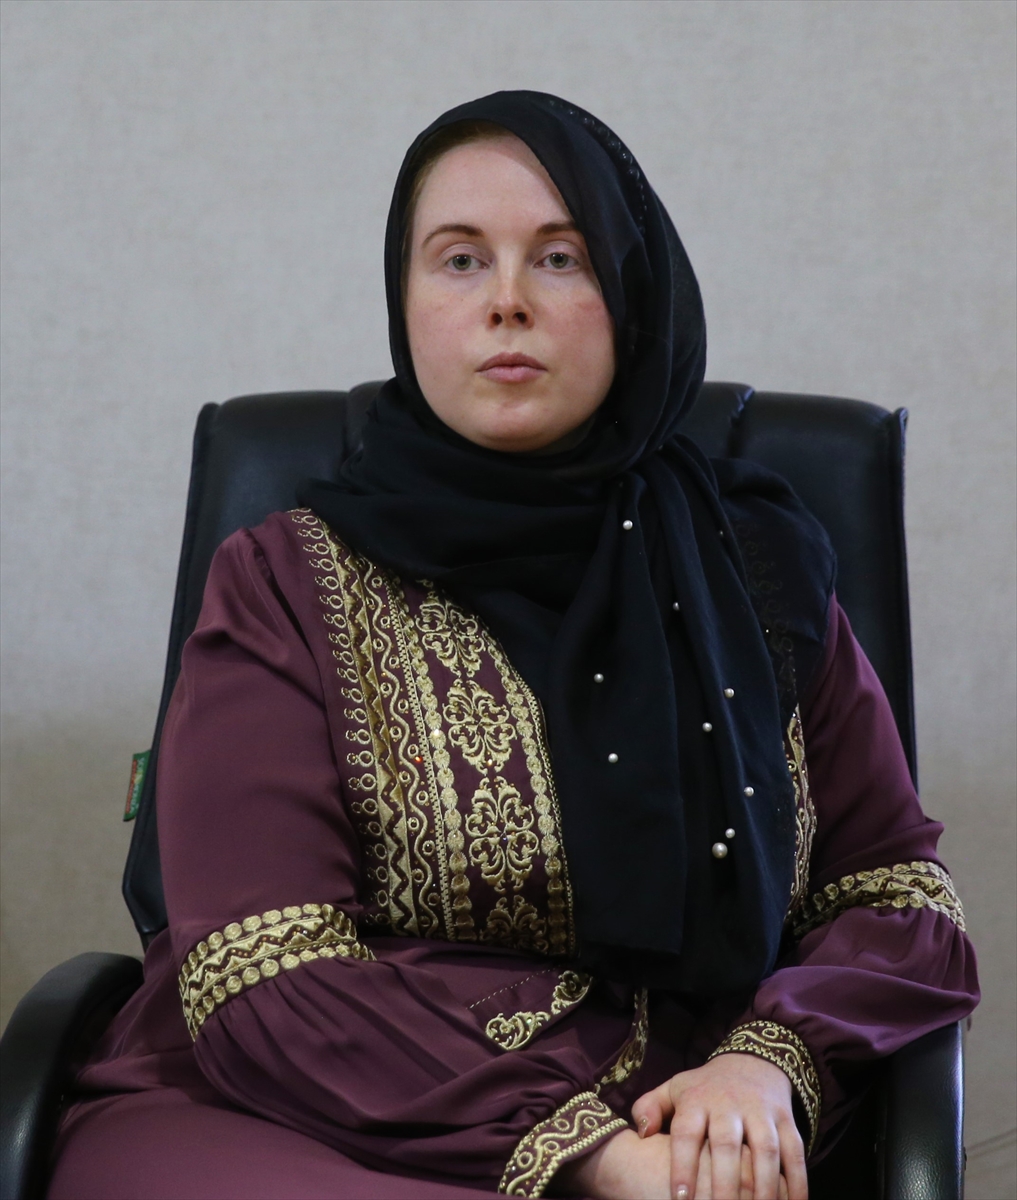 Almanyalı Anna Hommel Mardin'de Müslüman oldu